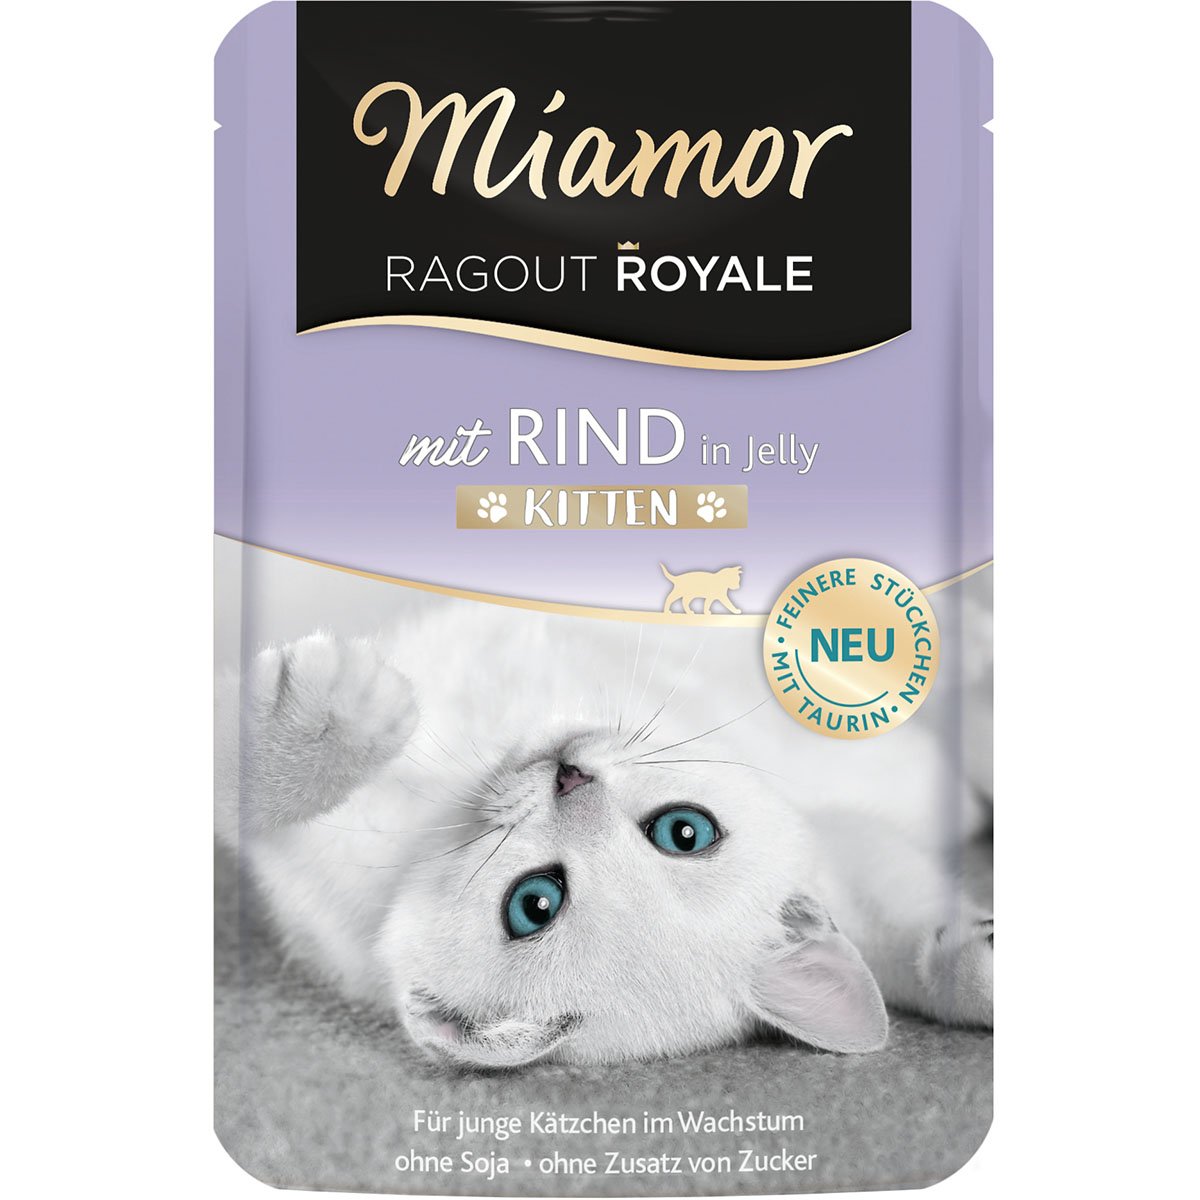 Miamor Ragout Royale Kitten Rind in Jelly 22x100g von Miamor